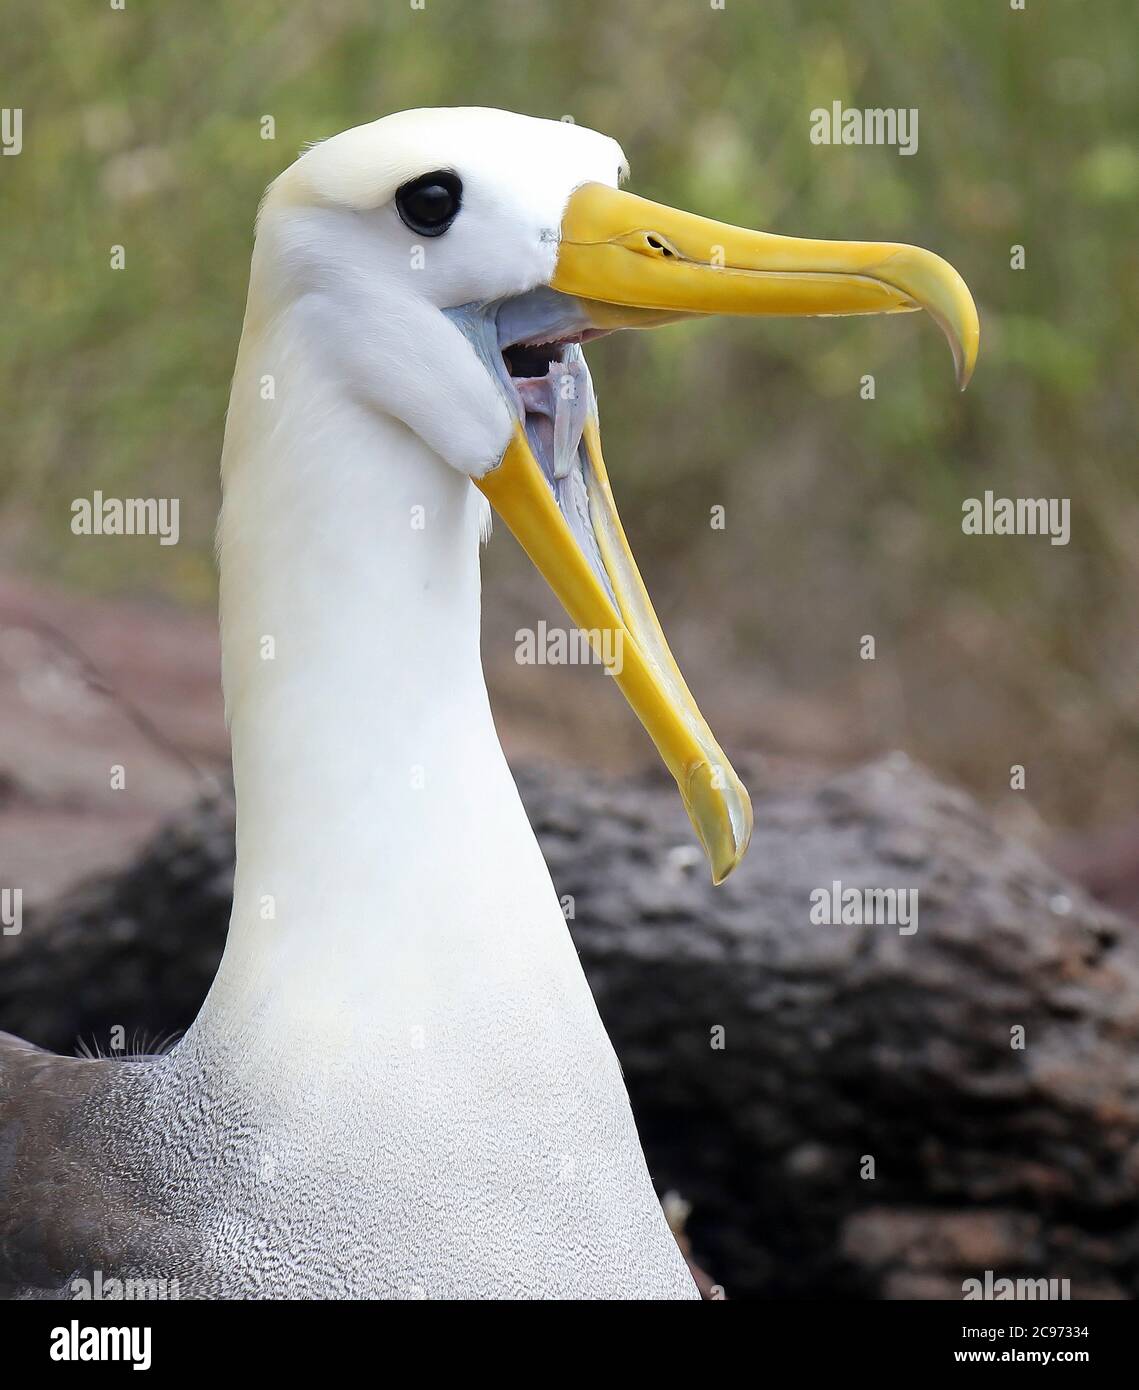 Albatros ondulés, albatros Galapagos (Diomedea irrorata, Phoebastria irrorata), bâillements adultes, albatros ondulés en danger critique sur l'île d'Espanola, Équateur, îles Galapagos, Espanola Banque D'Images